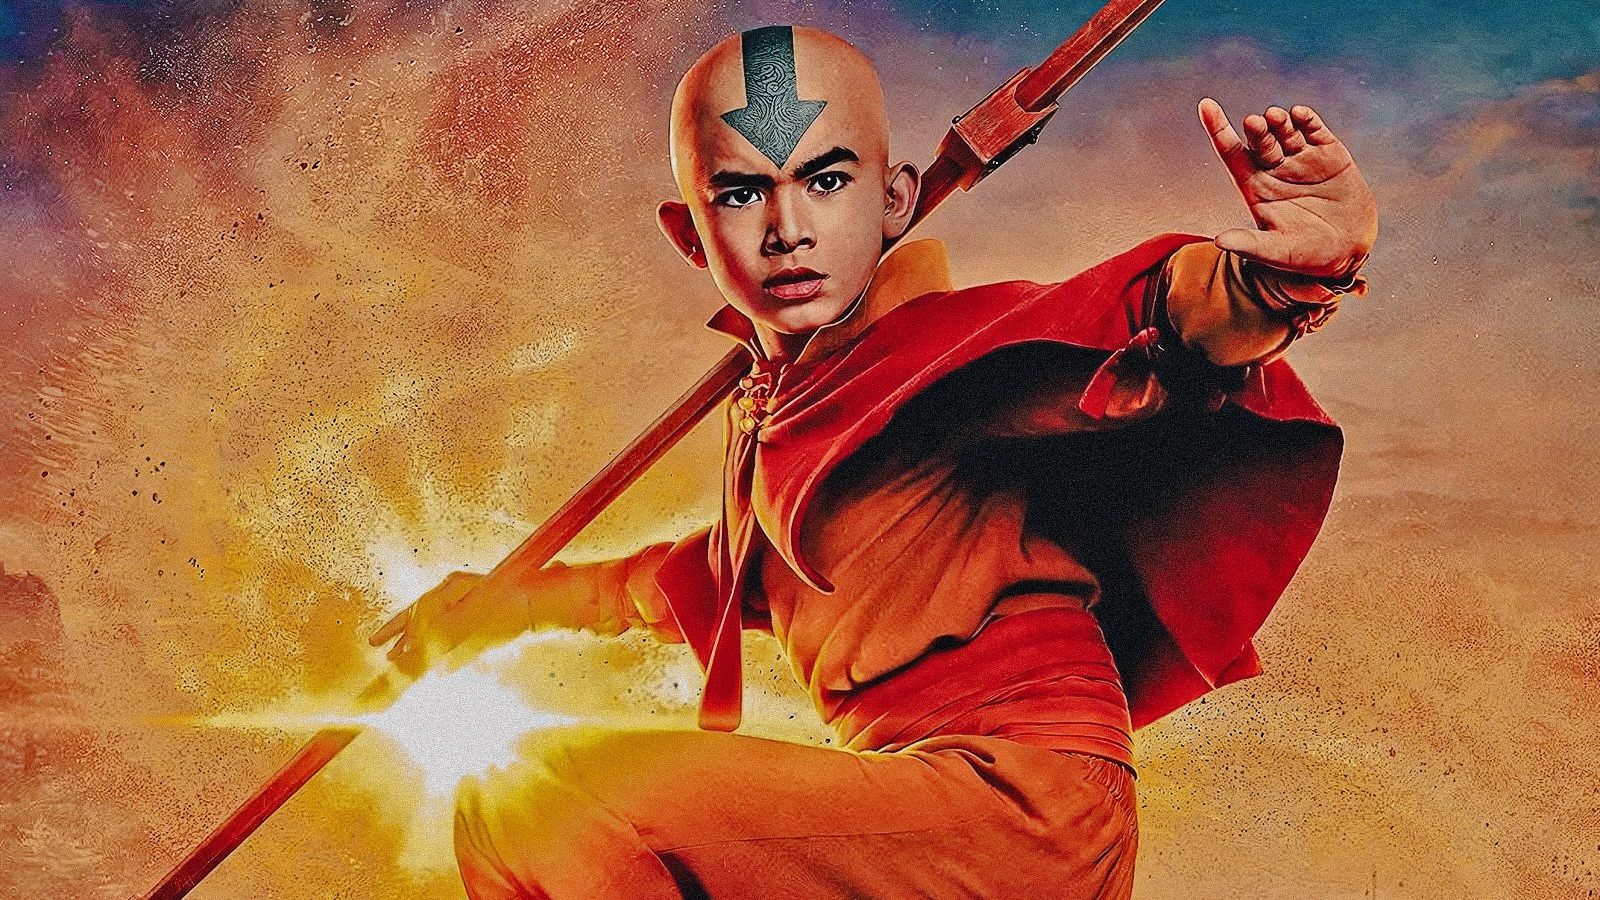 Avatar - La Leggenda di Aang, la recensione: una trasposizione energica ma sbilanciata